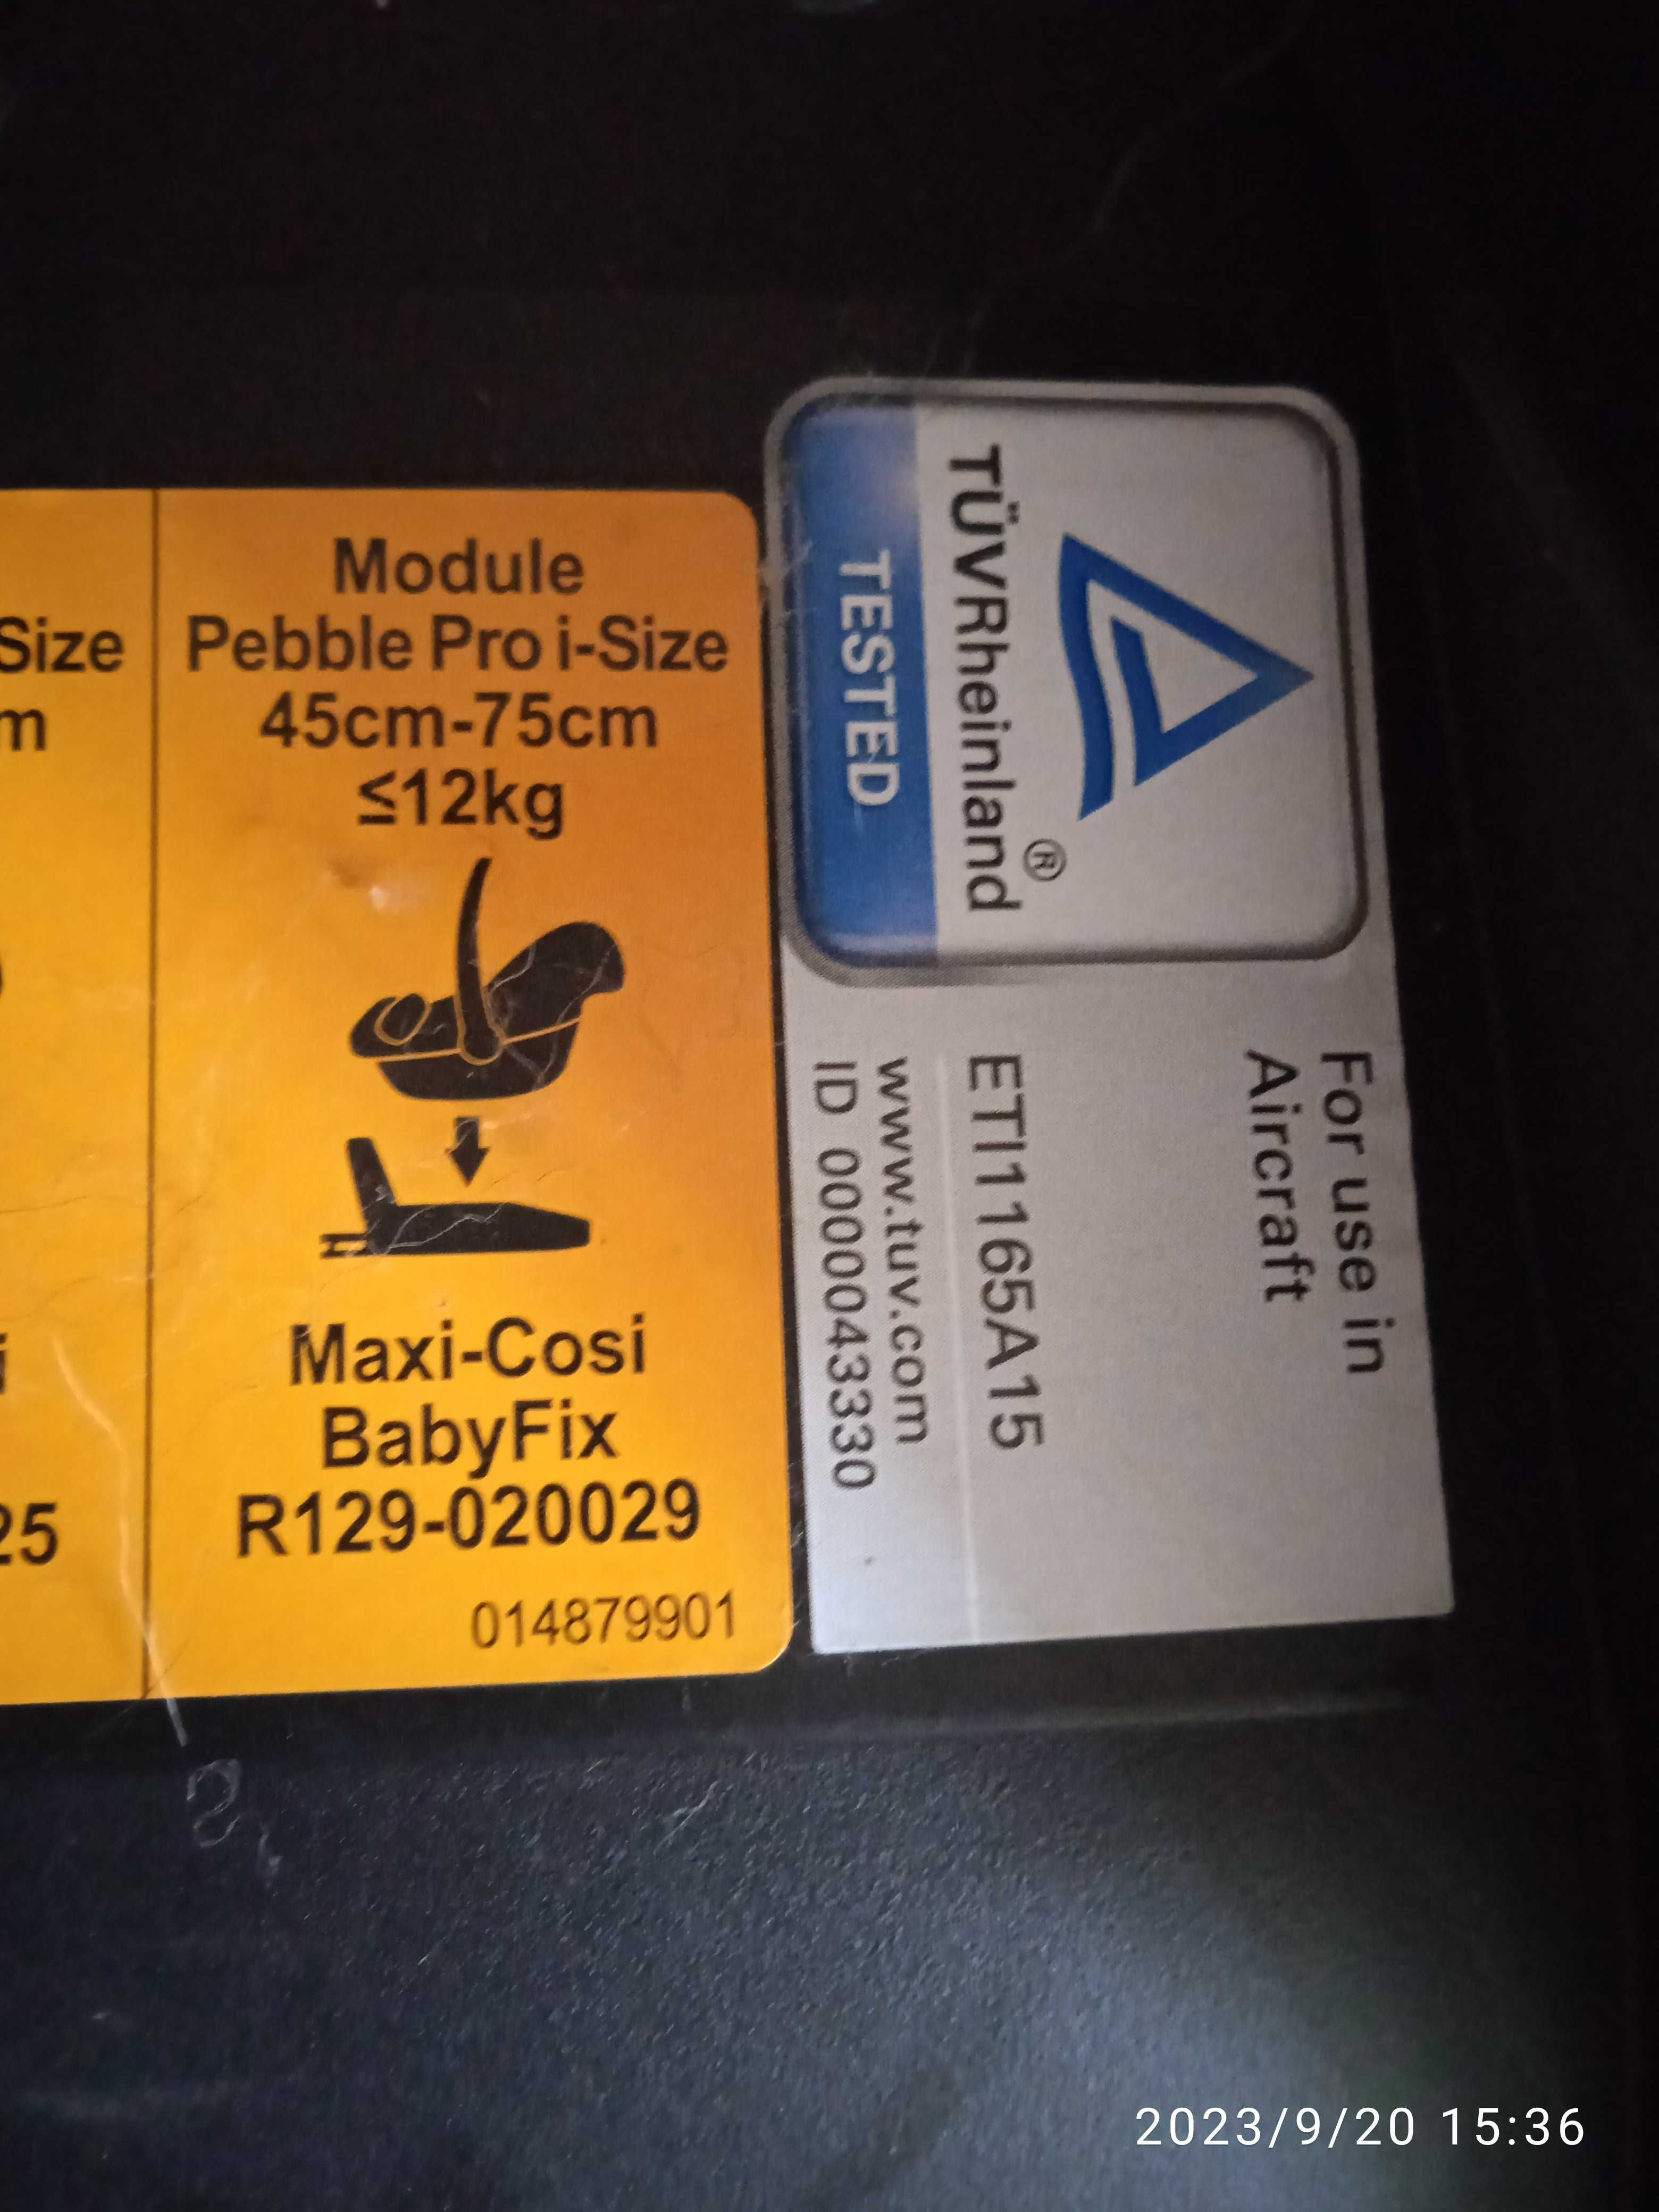 łupina nosidło fotelik samochodowy MAXI COSI 0-13 kg wkładka noworodek